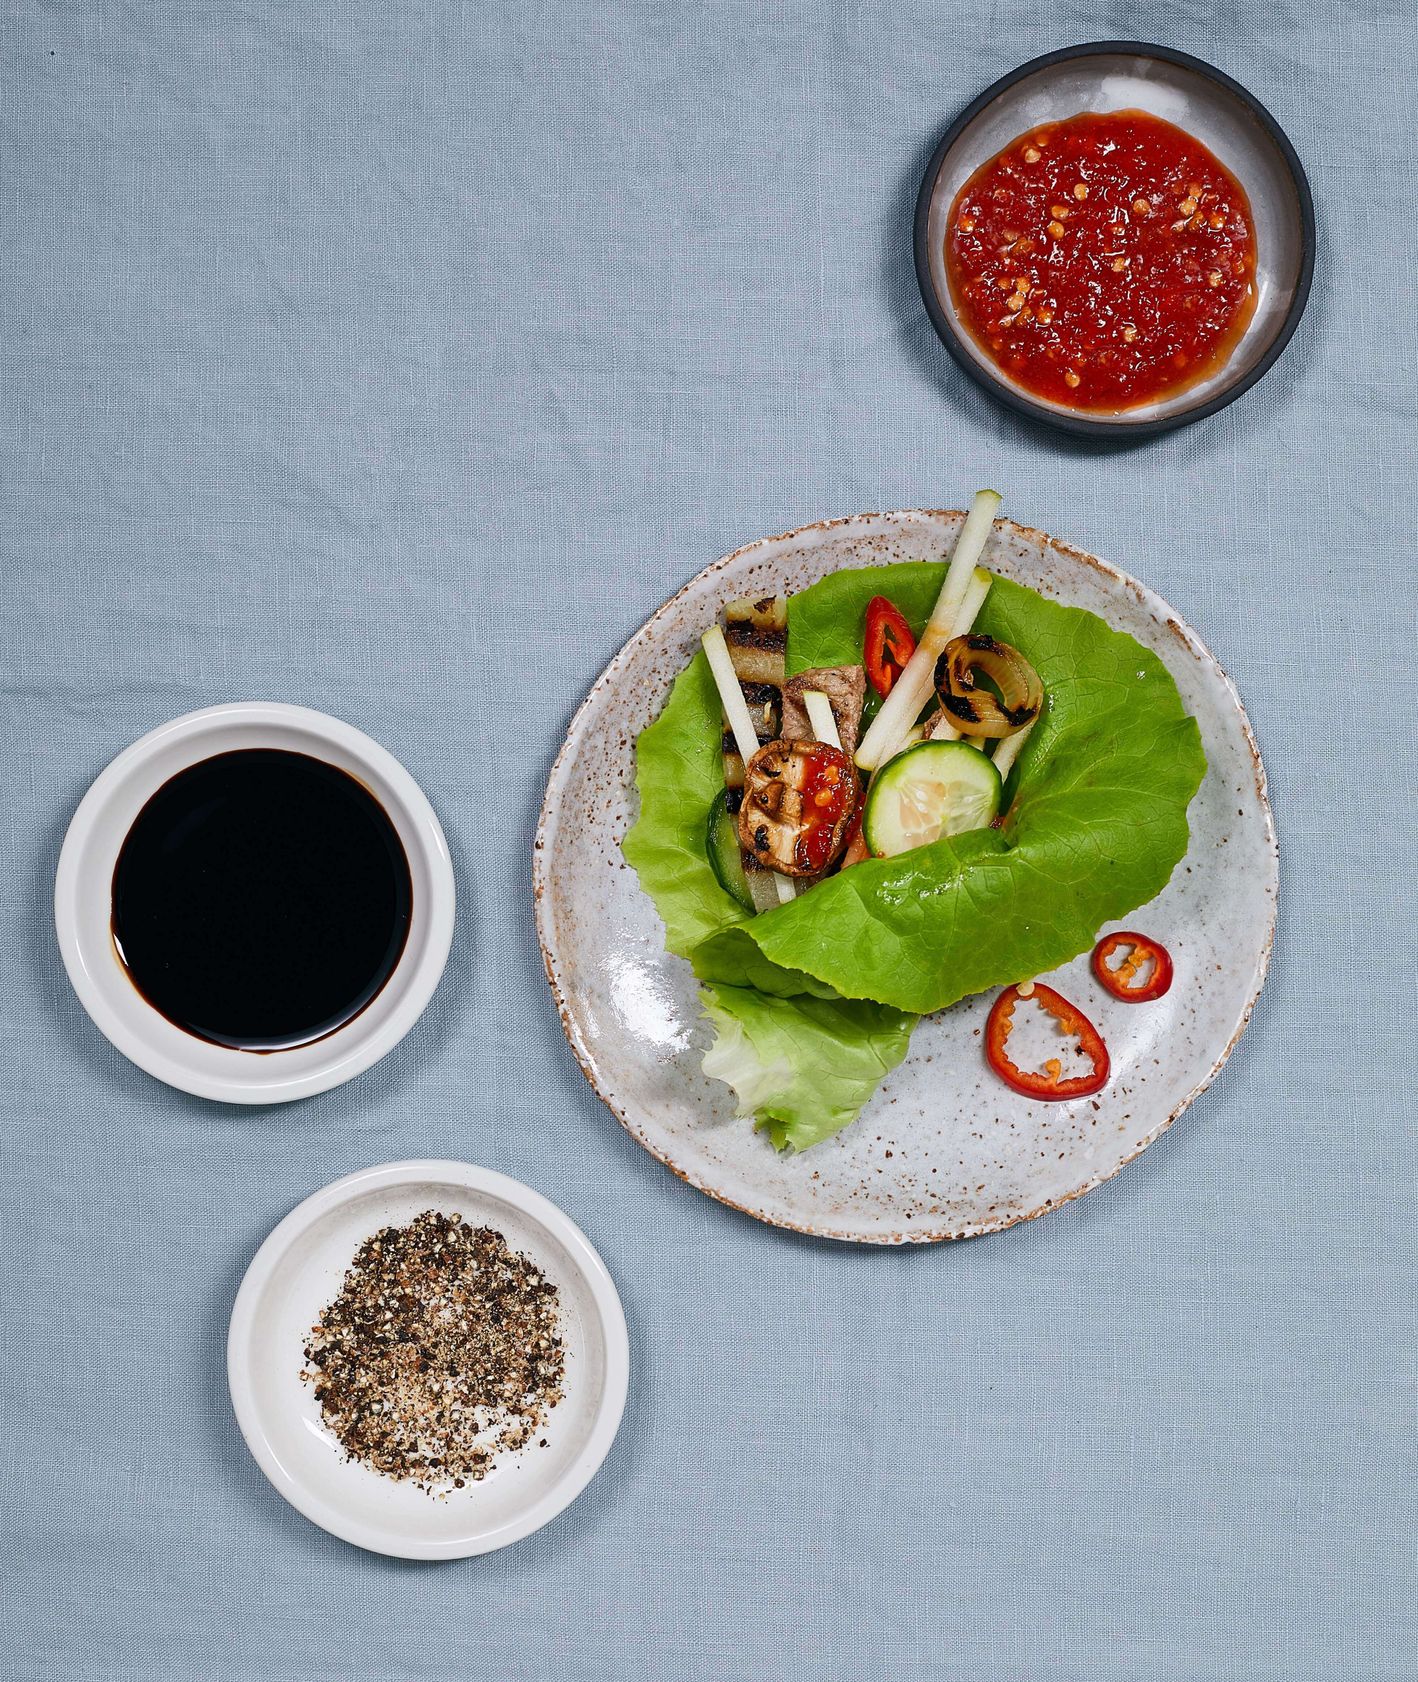 Koreański grill, mięso, warzywa, sosy i pikle  (fot. Maciek Niemojewski)